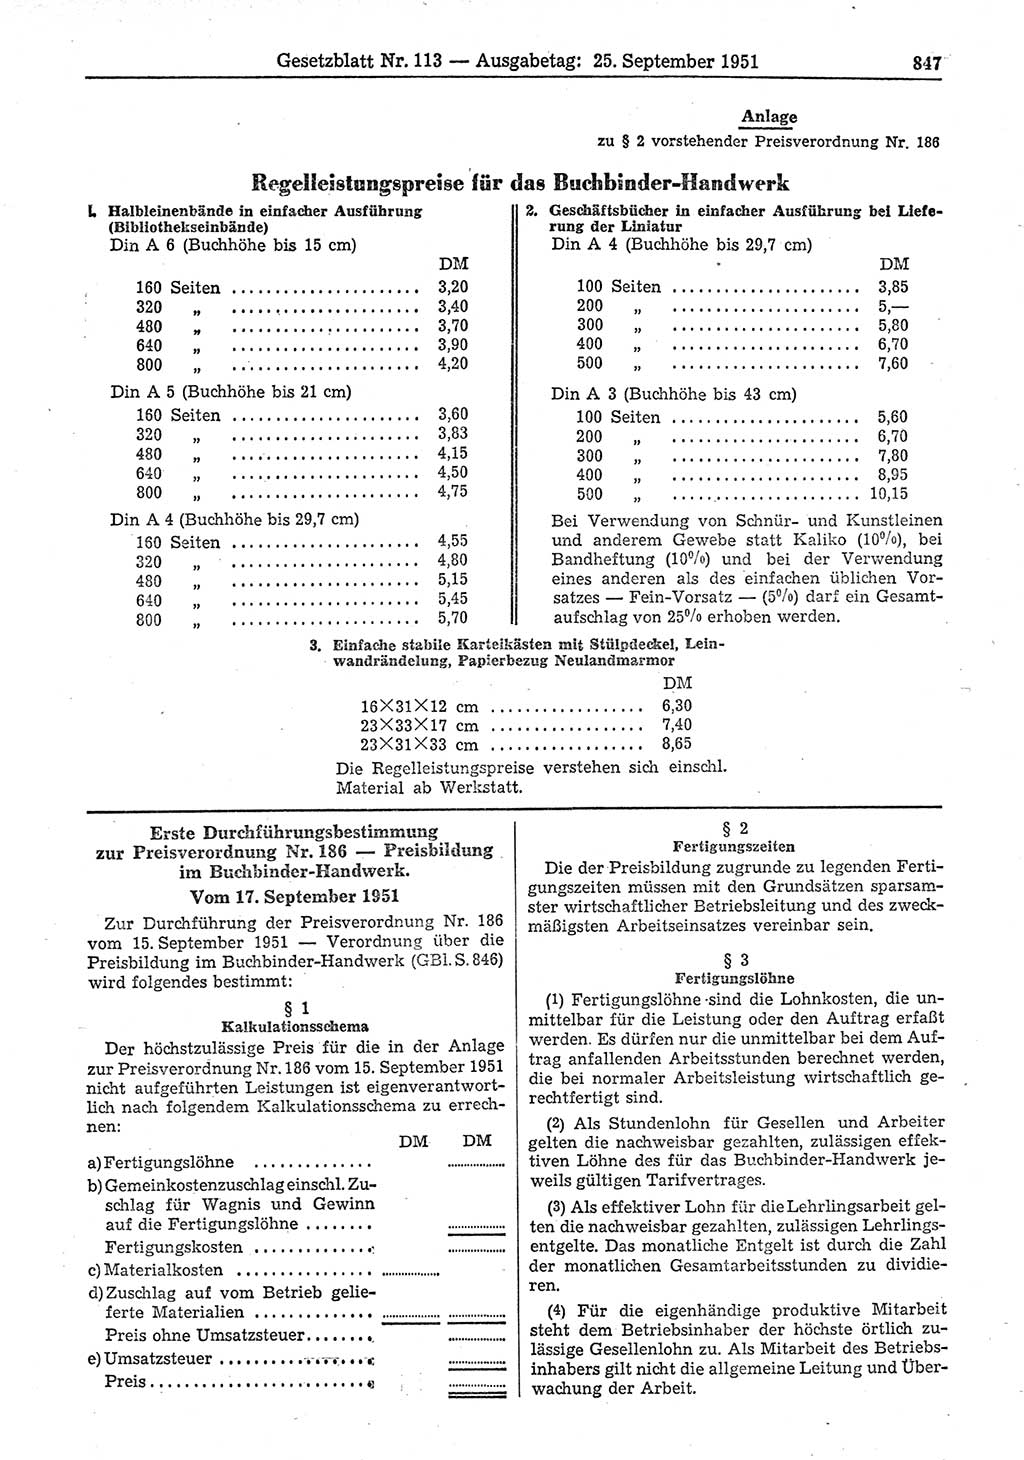 Gesetzblatt (GBl.) der Deutschen Demokratischen Republik (DDR) 1951, Seite 847 (GBl. DDR 1951, S. 847)